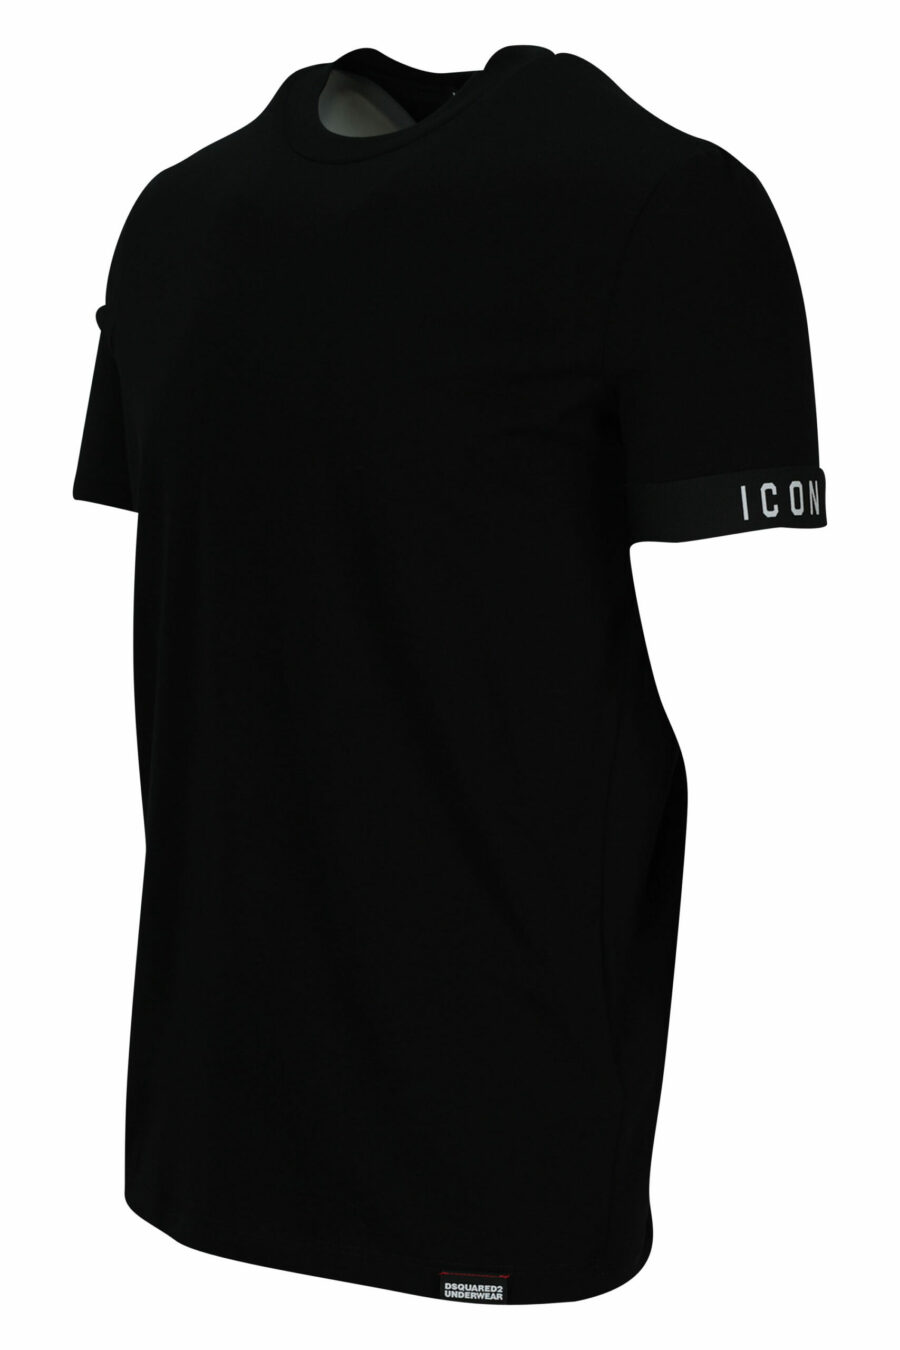 T-shirt schwarz mit kleinem Logo - 8032674767431 1 skaliert